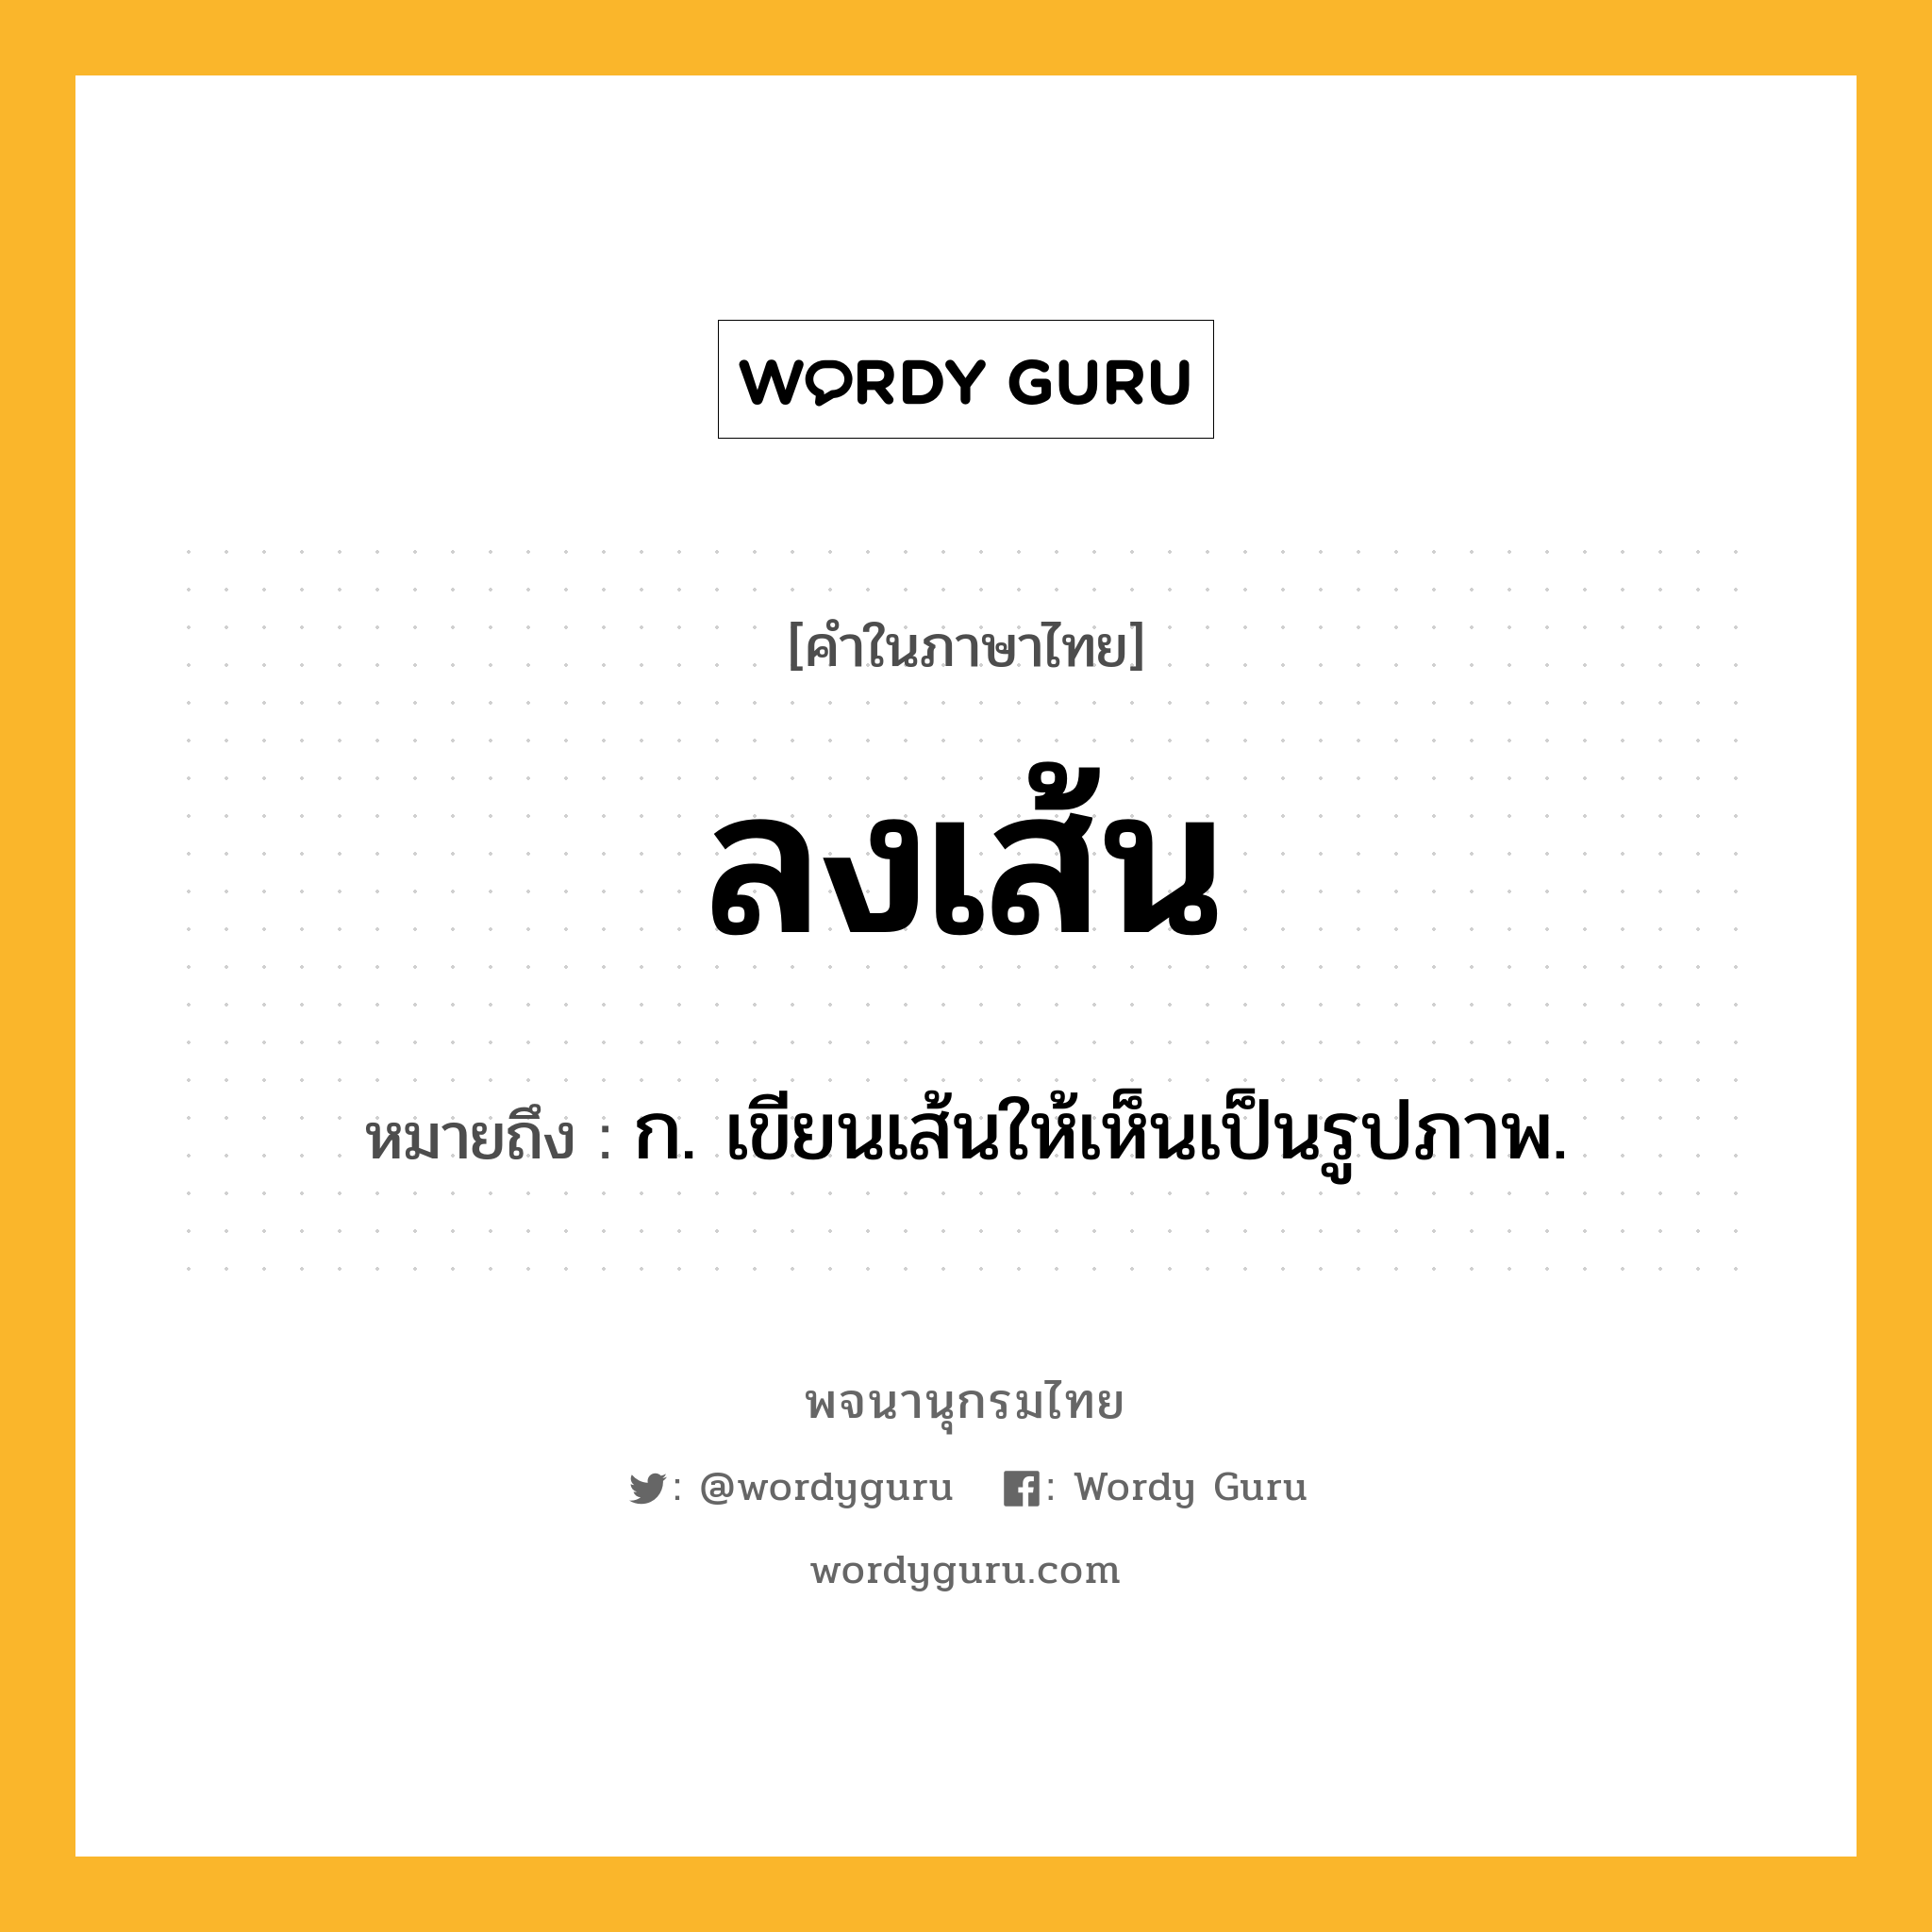 ลงเส้น หมายถึงอะไร?, คำในภาษาไทย ลงเส้น หมายถึง ก. เขียนเส้นให้เห็นเป็นรูปภาพ.